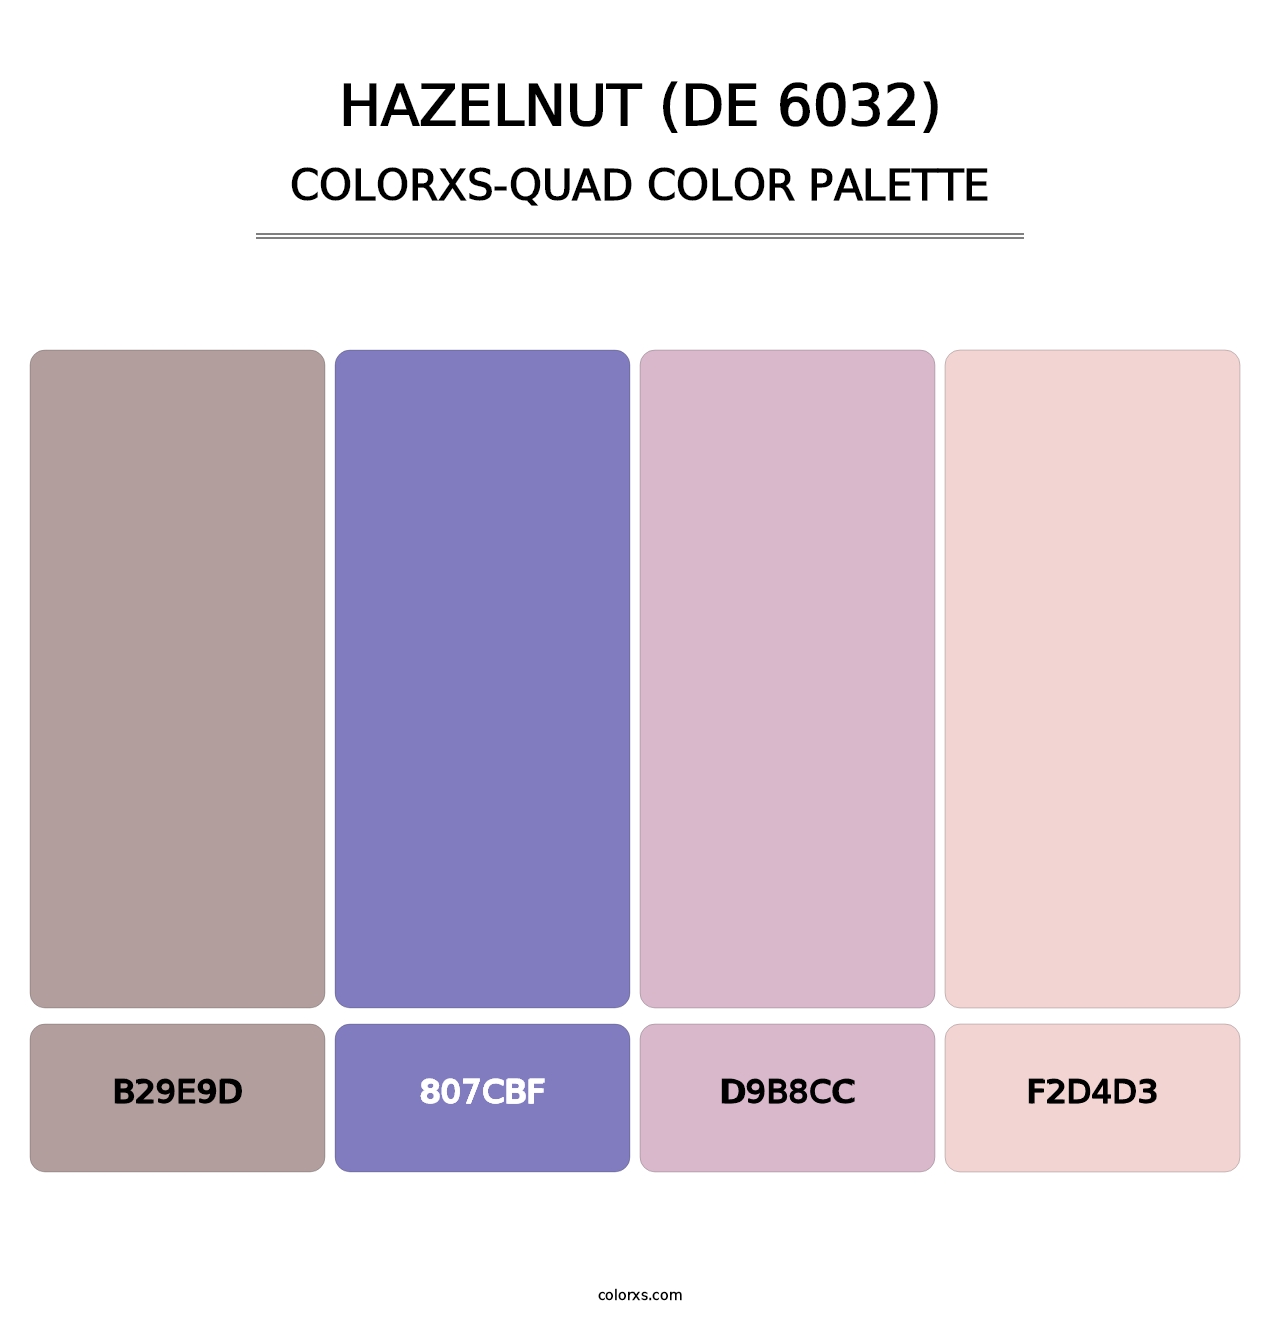 Hazelnut (DE 6032) - Colorxs Quad Palette